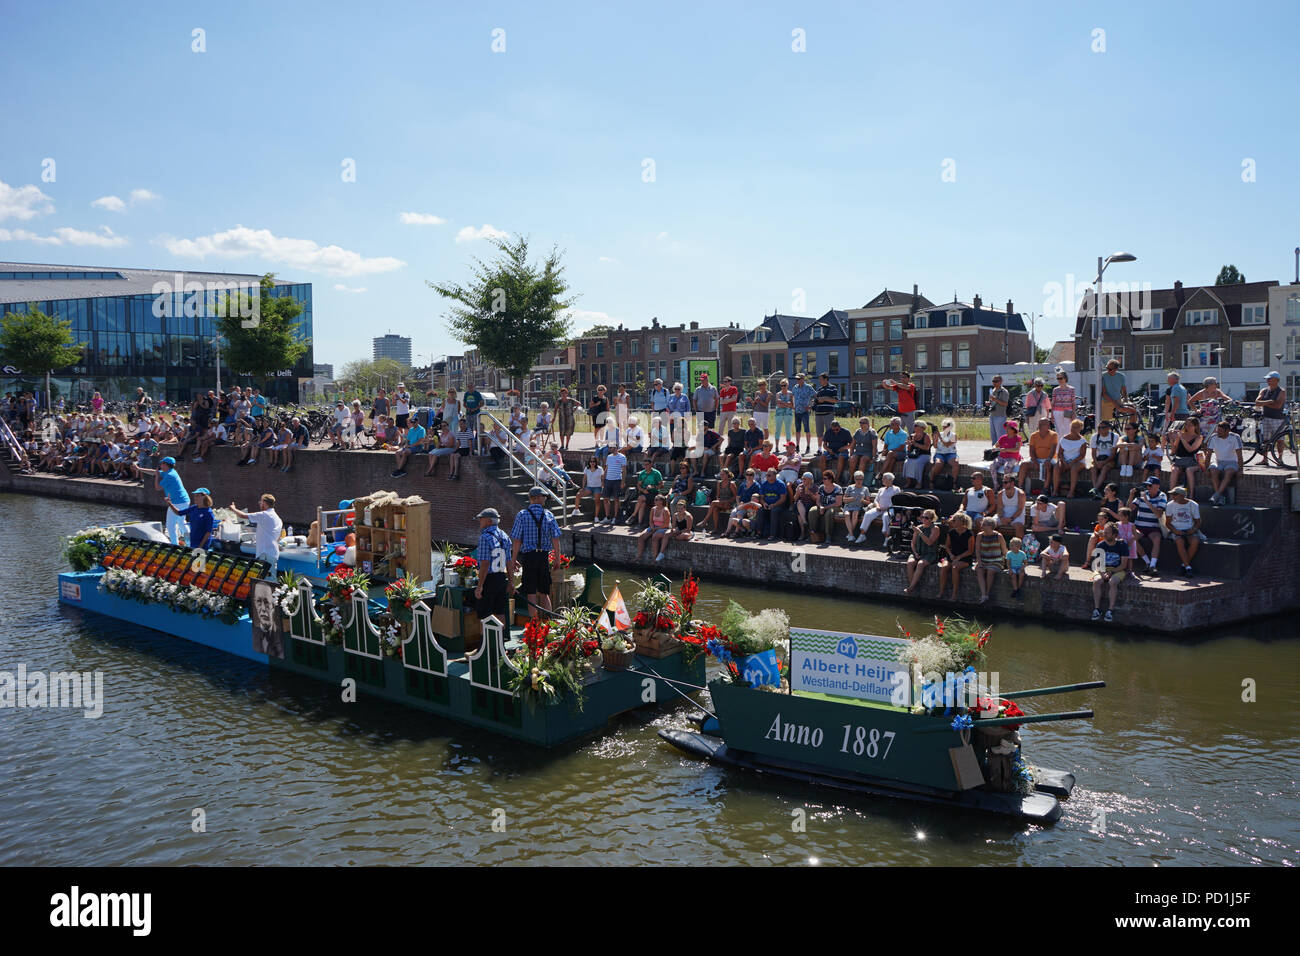 Delft, Niederlande - 5 August 2018: Westland Boot Parade (Varend Corso), festliche Spektakel, Boote mit Gemüse und Blumen, bunten Segeln Blumenkorso in der Region Westland Kredit eingerichtet: SkandaRamana/Alamy leben Nachrichten Stockfoto